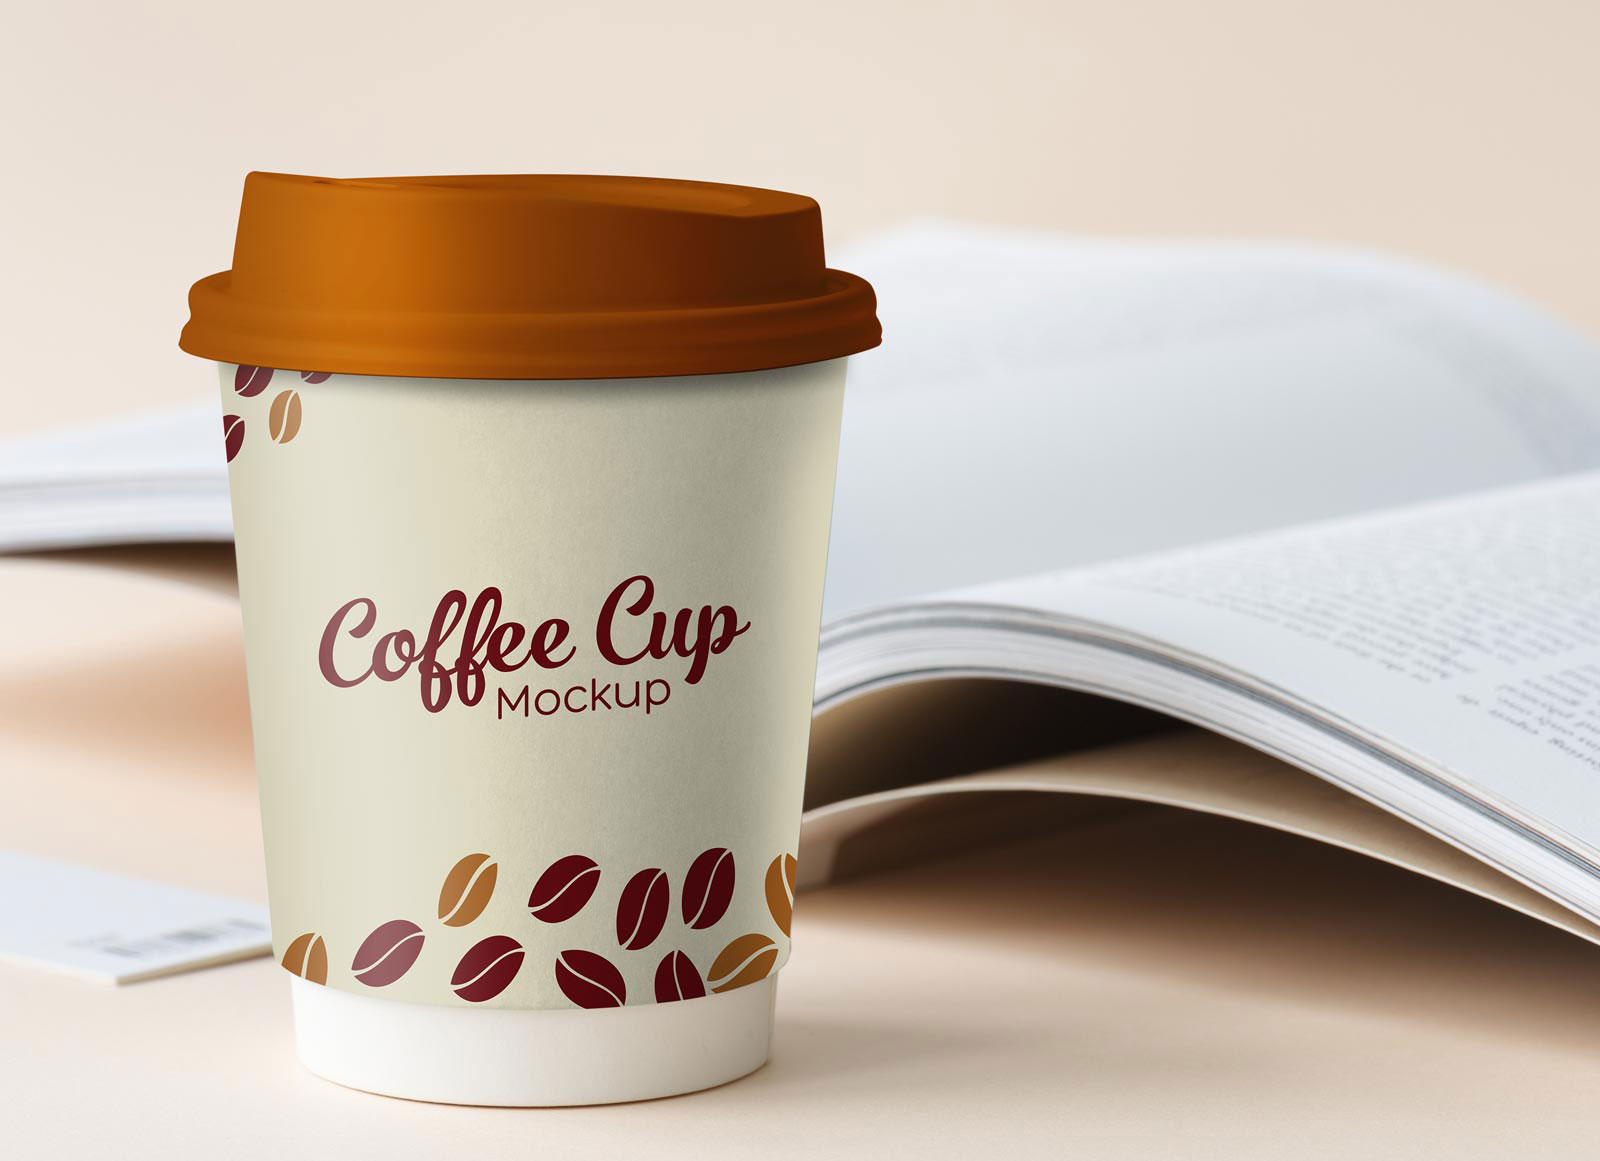 Petite tasse de café en papier photo maquette